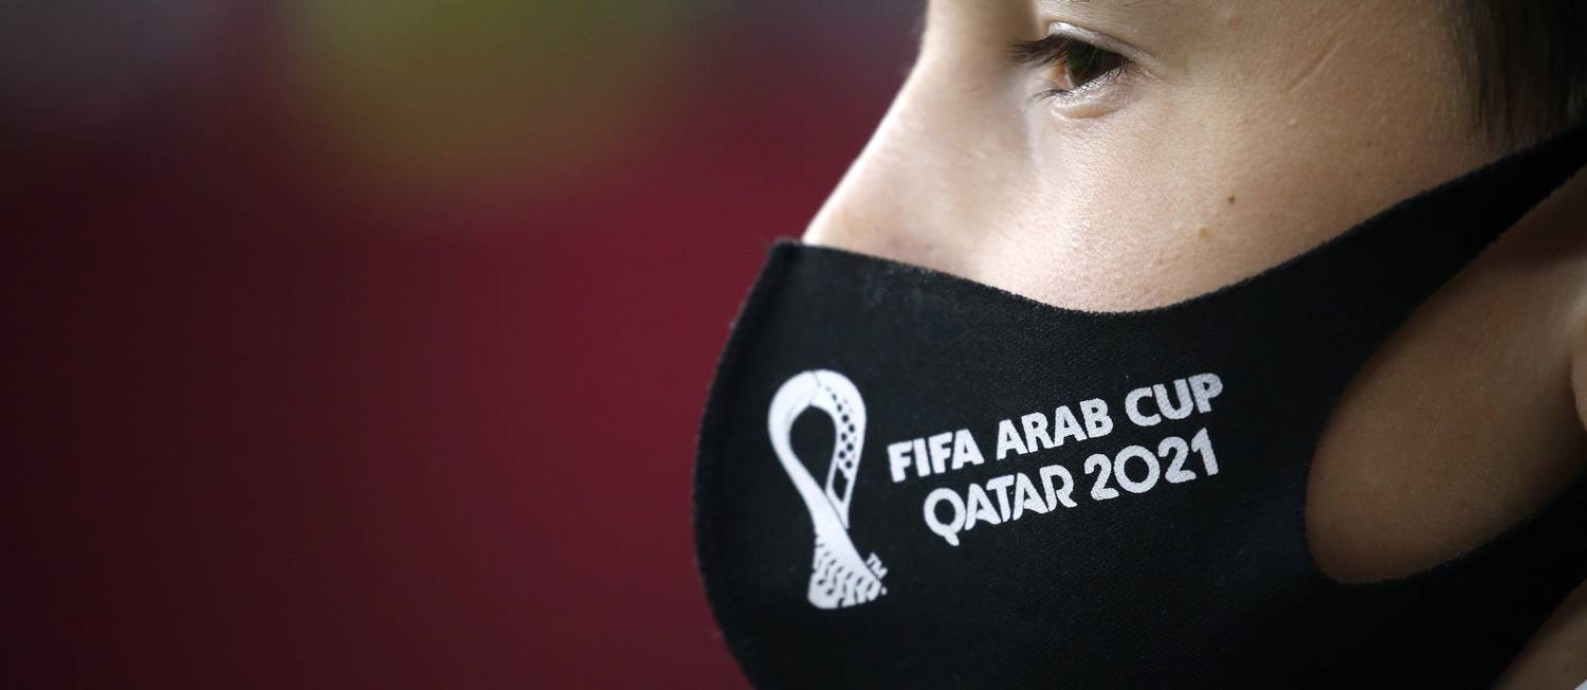 Com estádios prontos e infraestrutura moderna, Qatar teme pela pandemia durante o Mundial Foto: AMR ABDALLAH DALSH / REUTERS